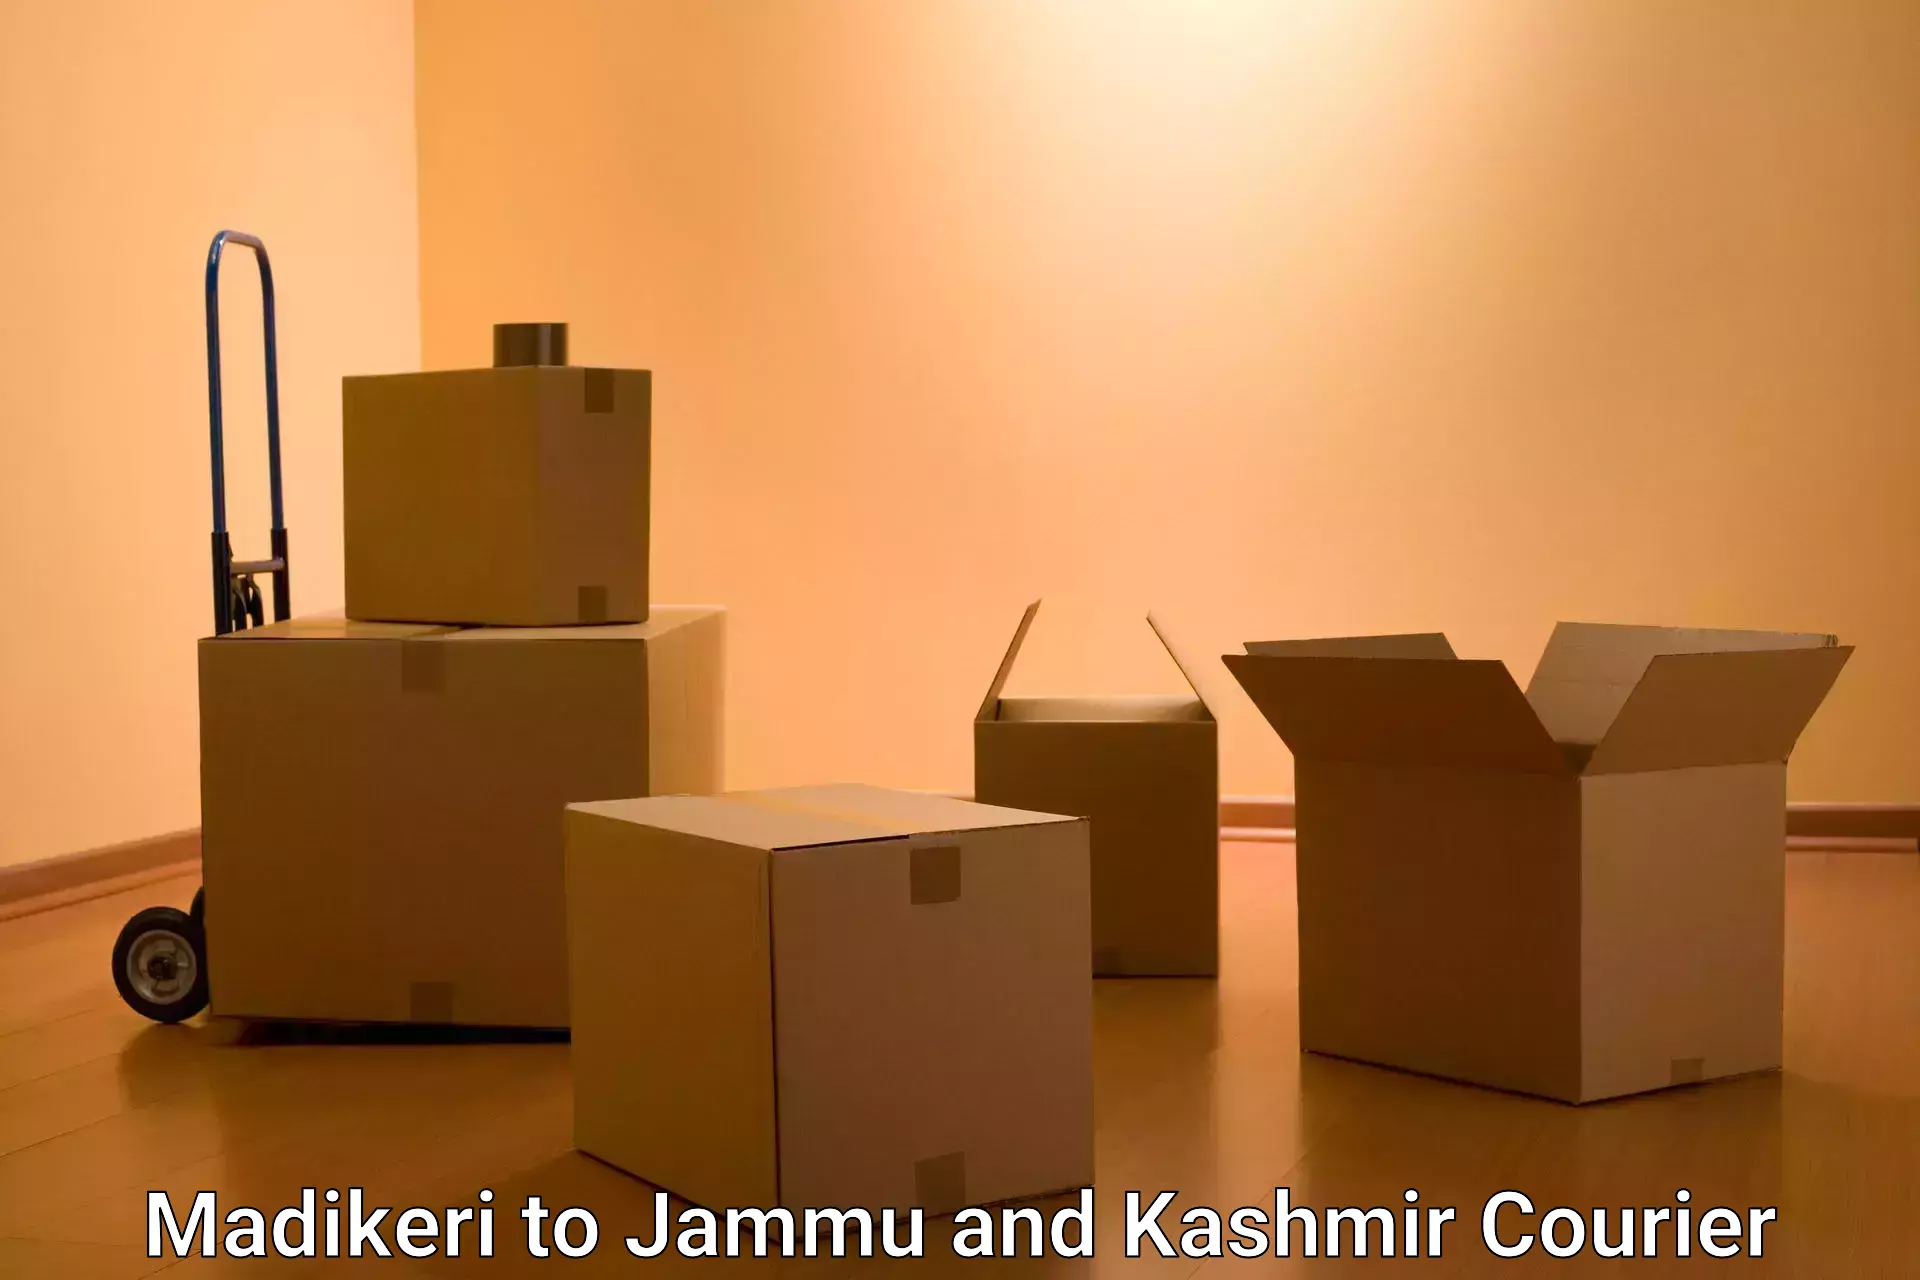 Express package handling Madikeri to Jammu and Kashmir